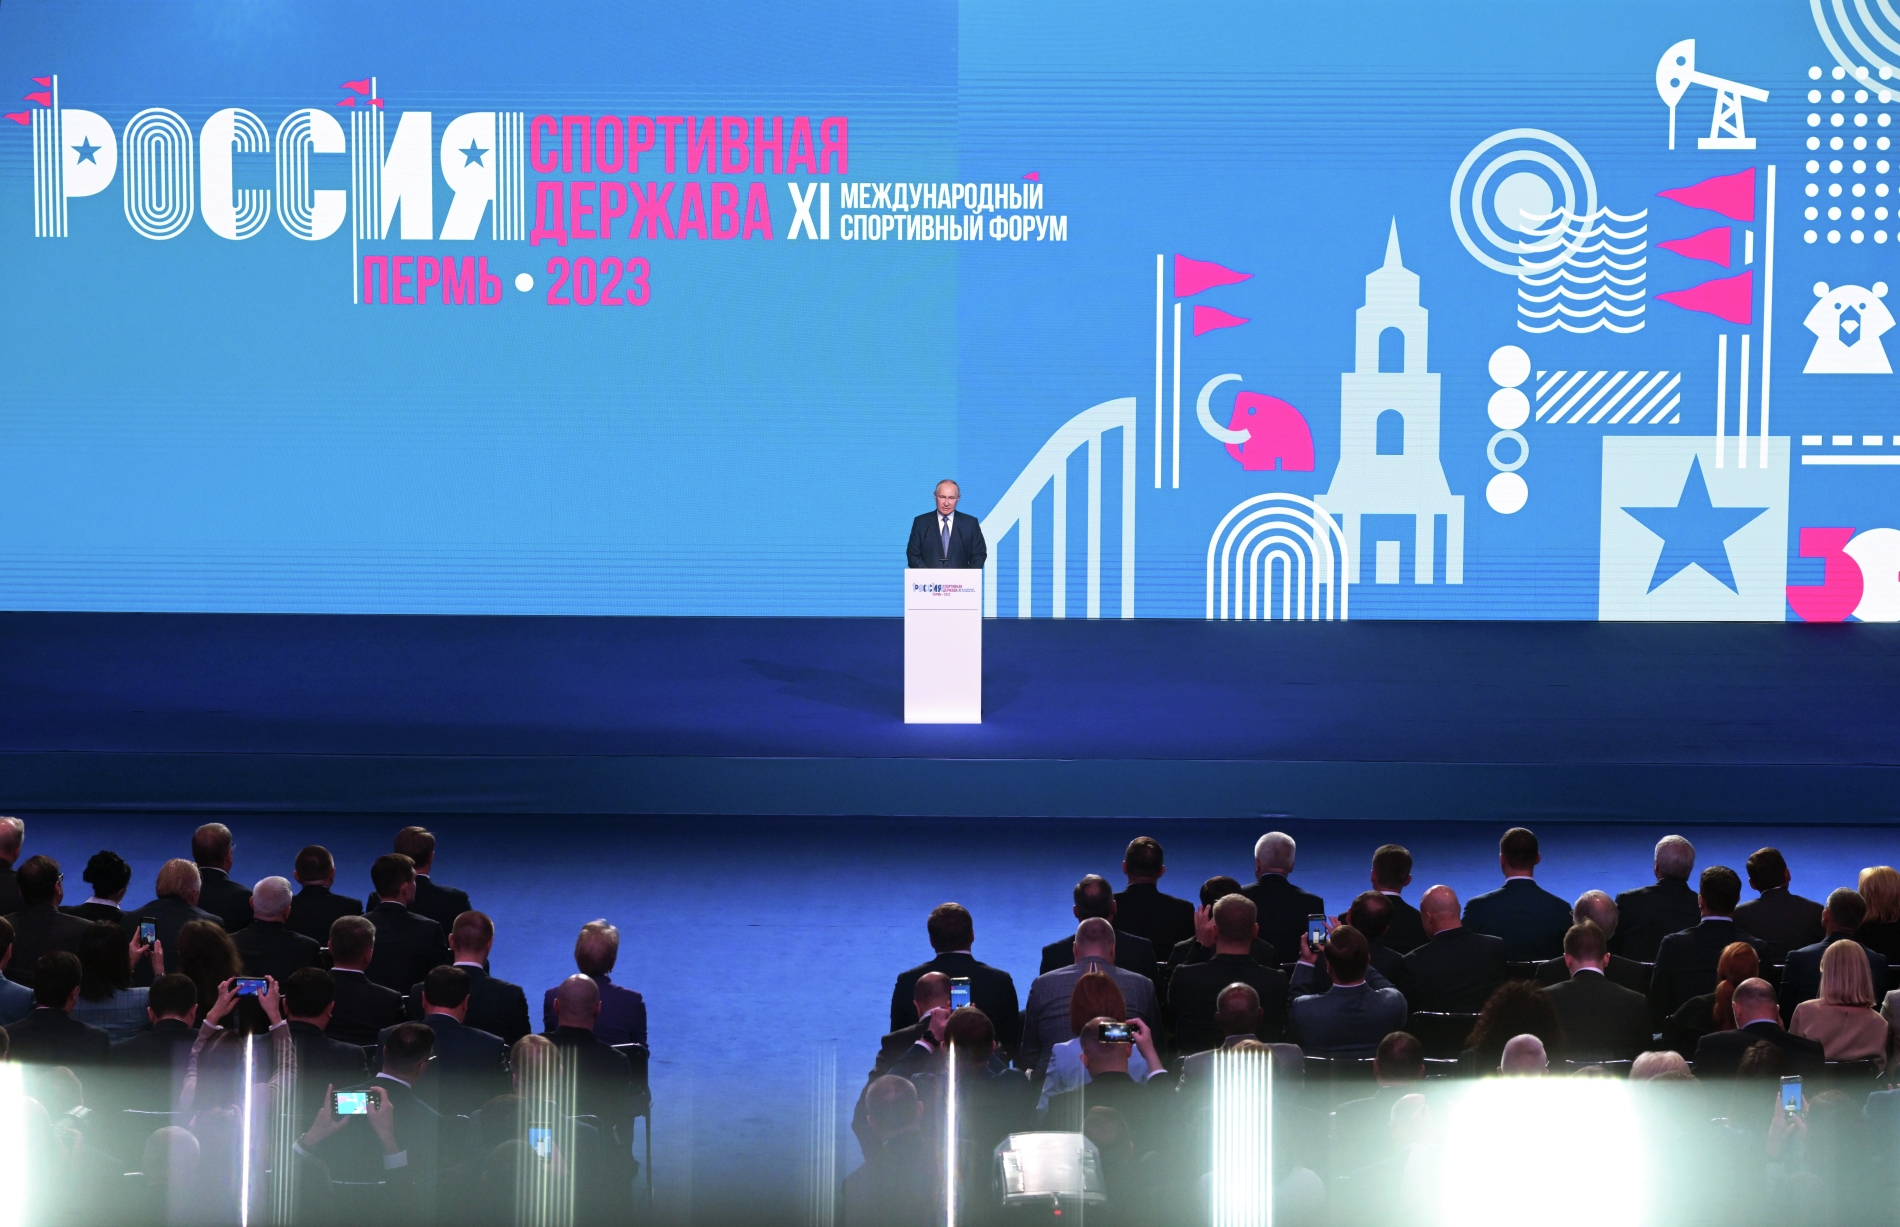 Владимир Путин: Россия понимает, как важно беречь традиции спорта, но и открыта всему лучшему, новому, передовому